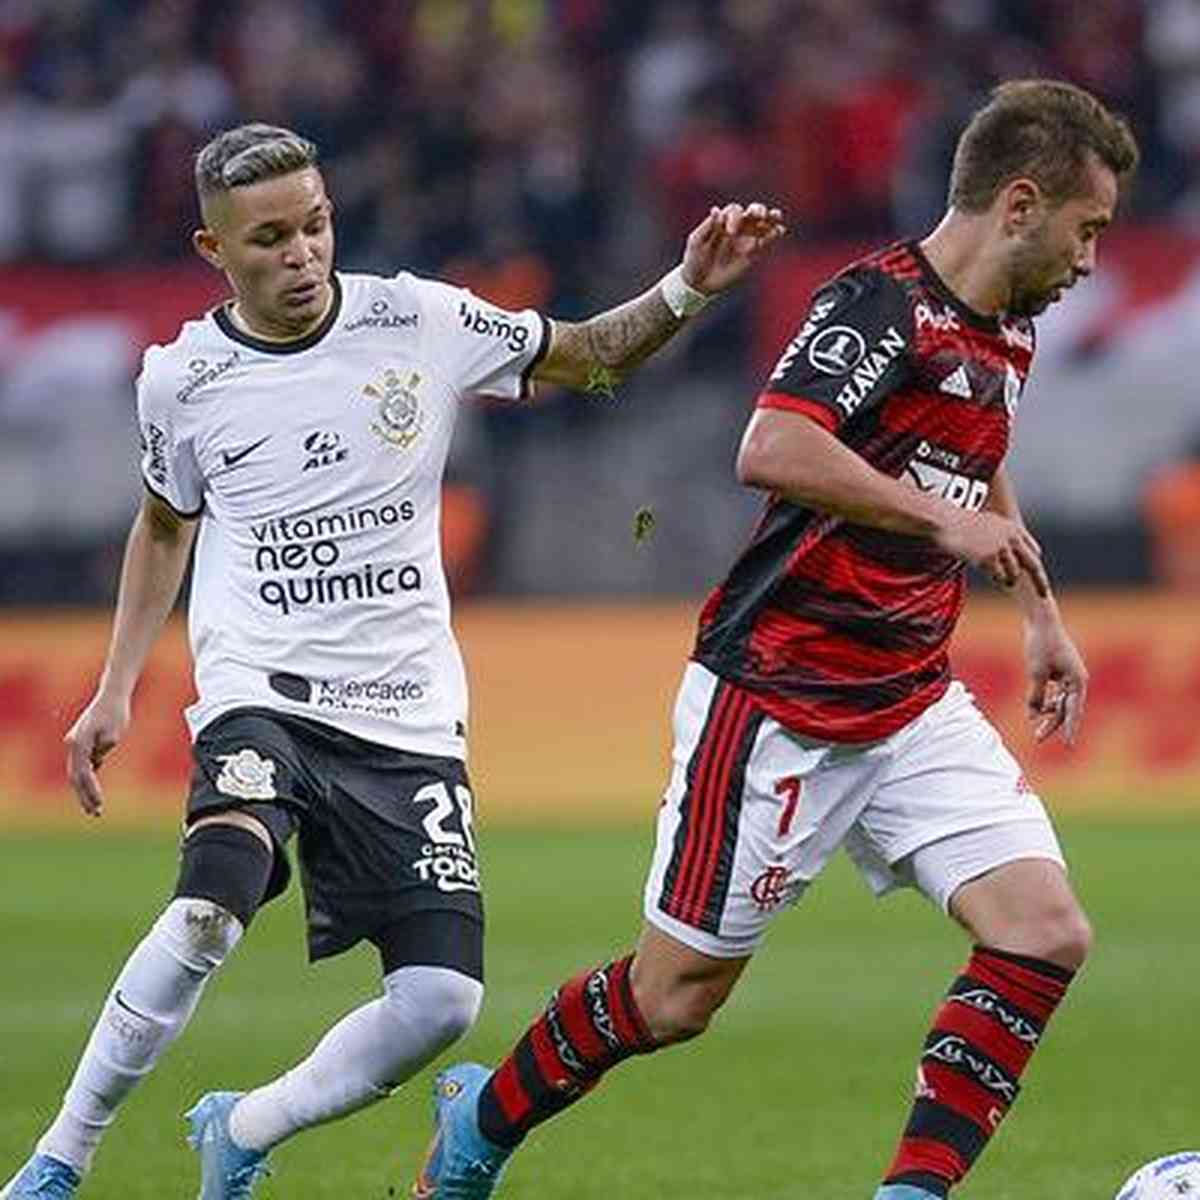 Flamengo x Corinthians - AO VIVO  CONMEBOL Libertadores - QUARTAS DE FINAL  - JOGO 2 